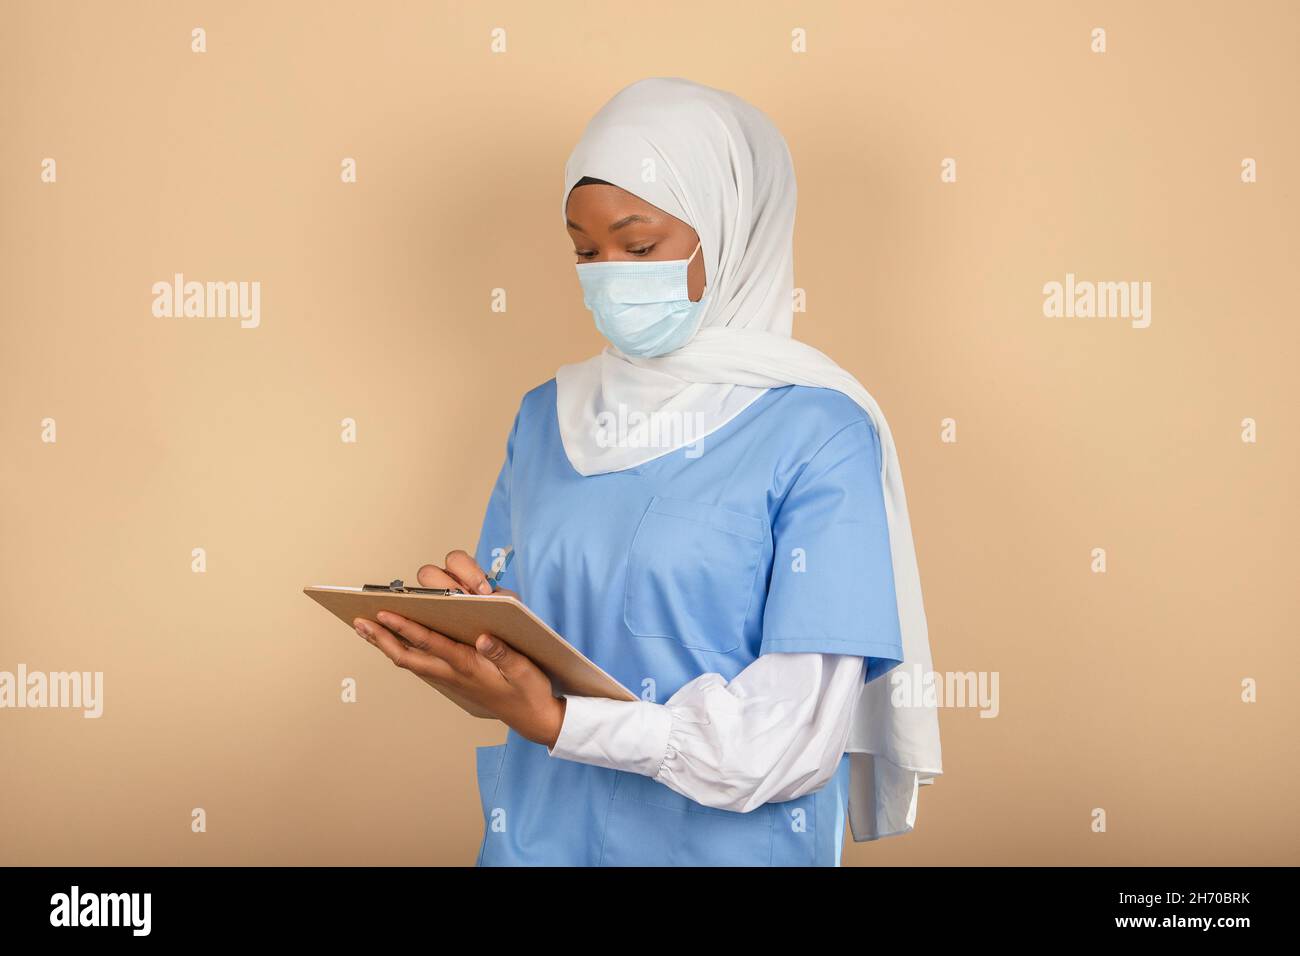 Una giovane infermiera musulmana in piedi in una maschera chirurgica prende nota su una clipboard su una parete gialla Foto Stock